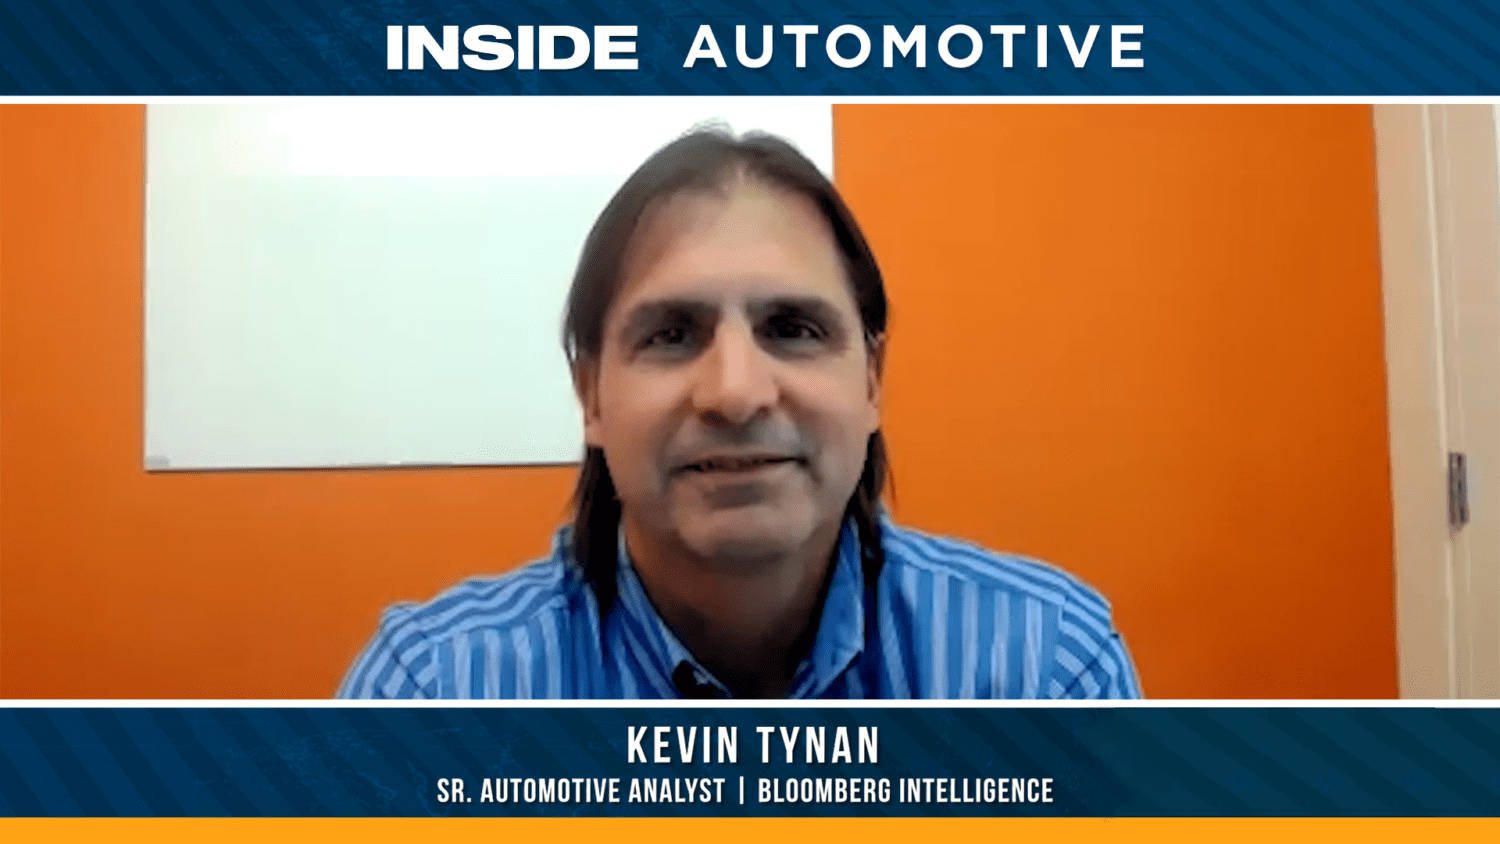 Kevin Tynan